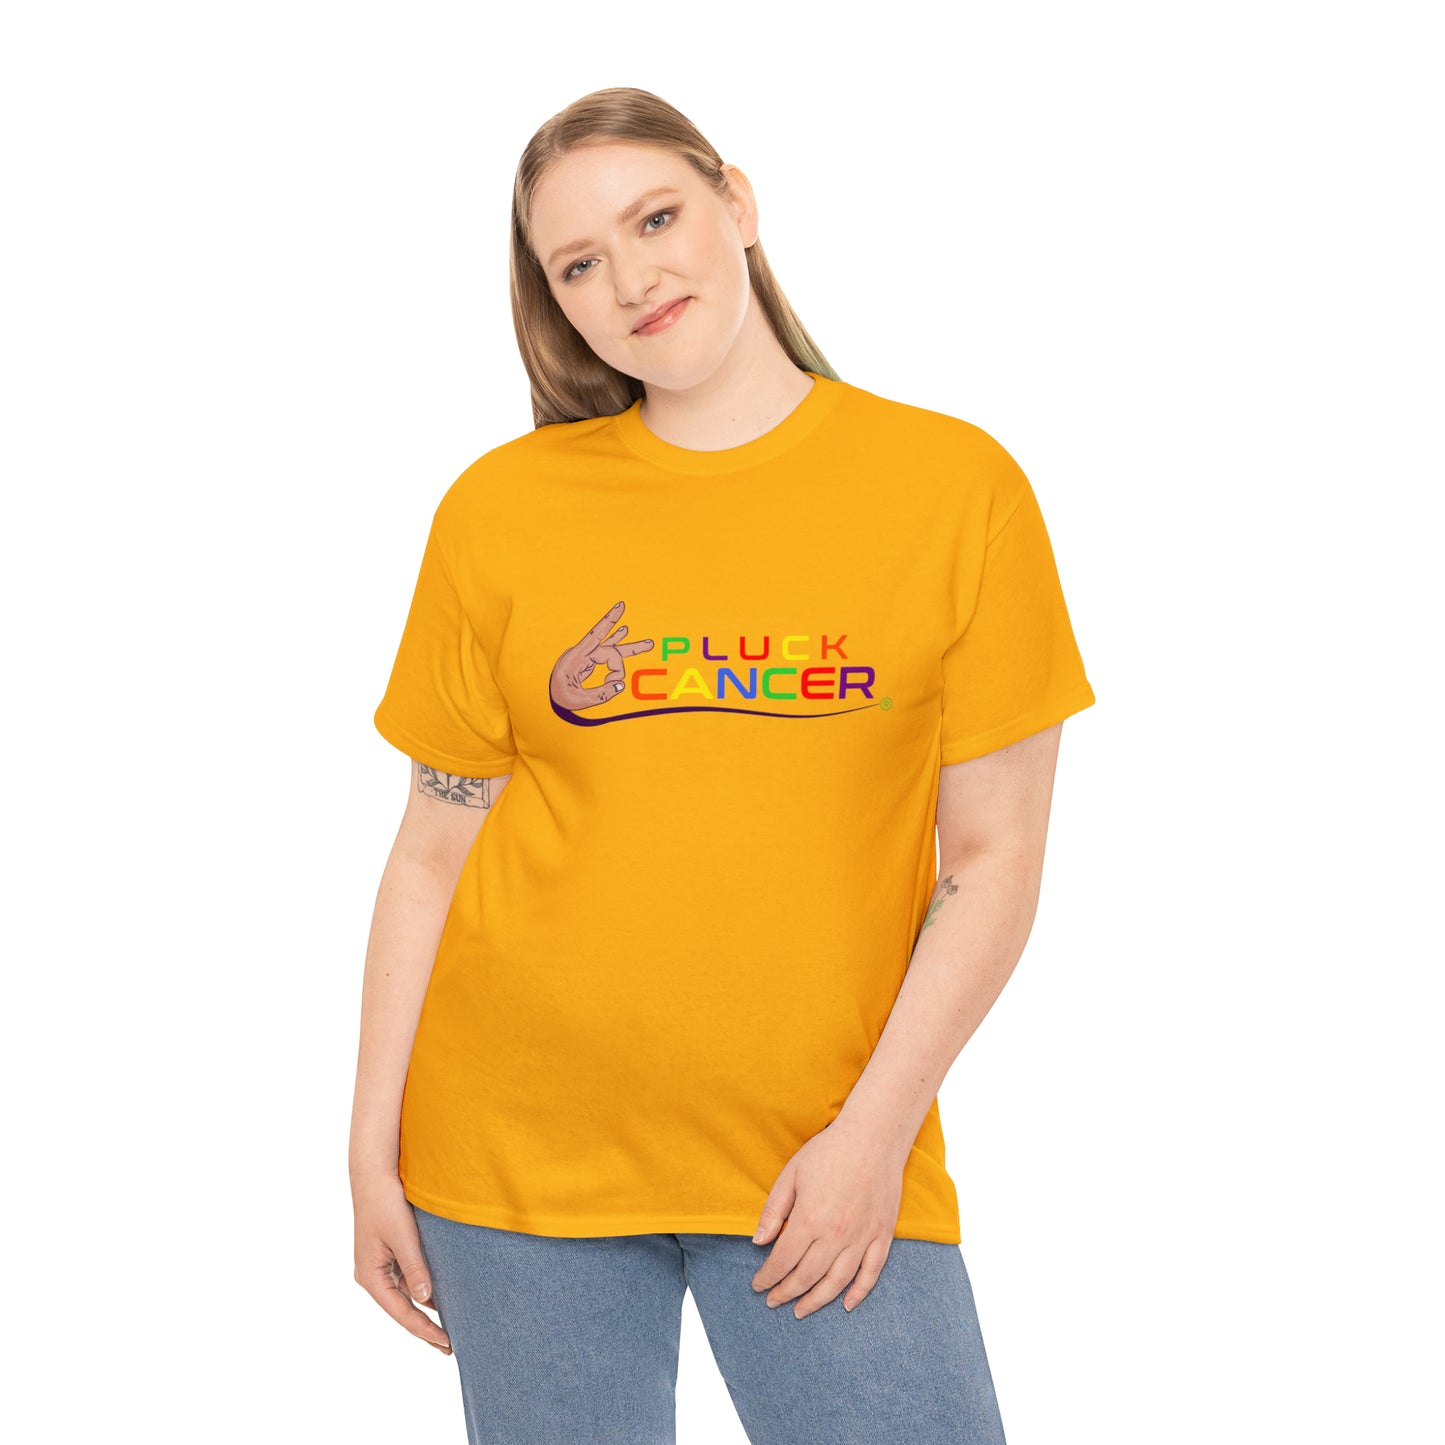 Pluck Cancer Women's Cotton T-Shirt - Gold